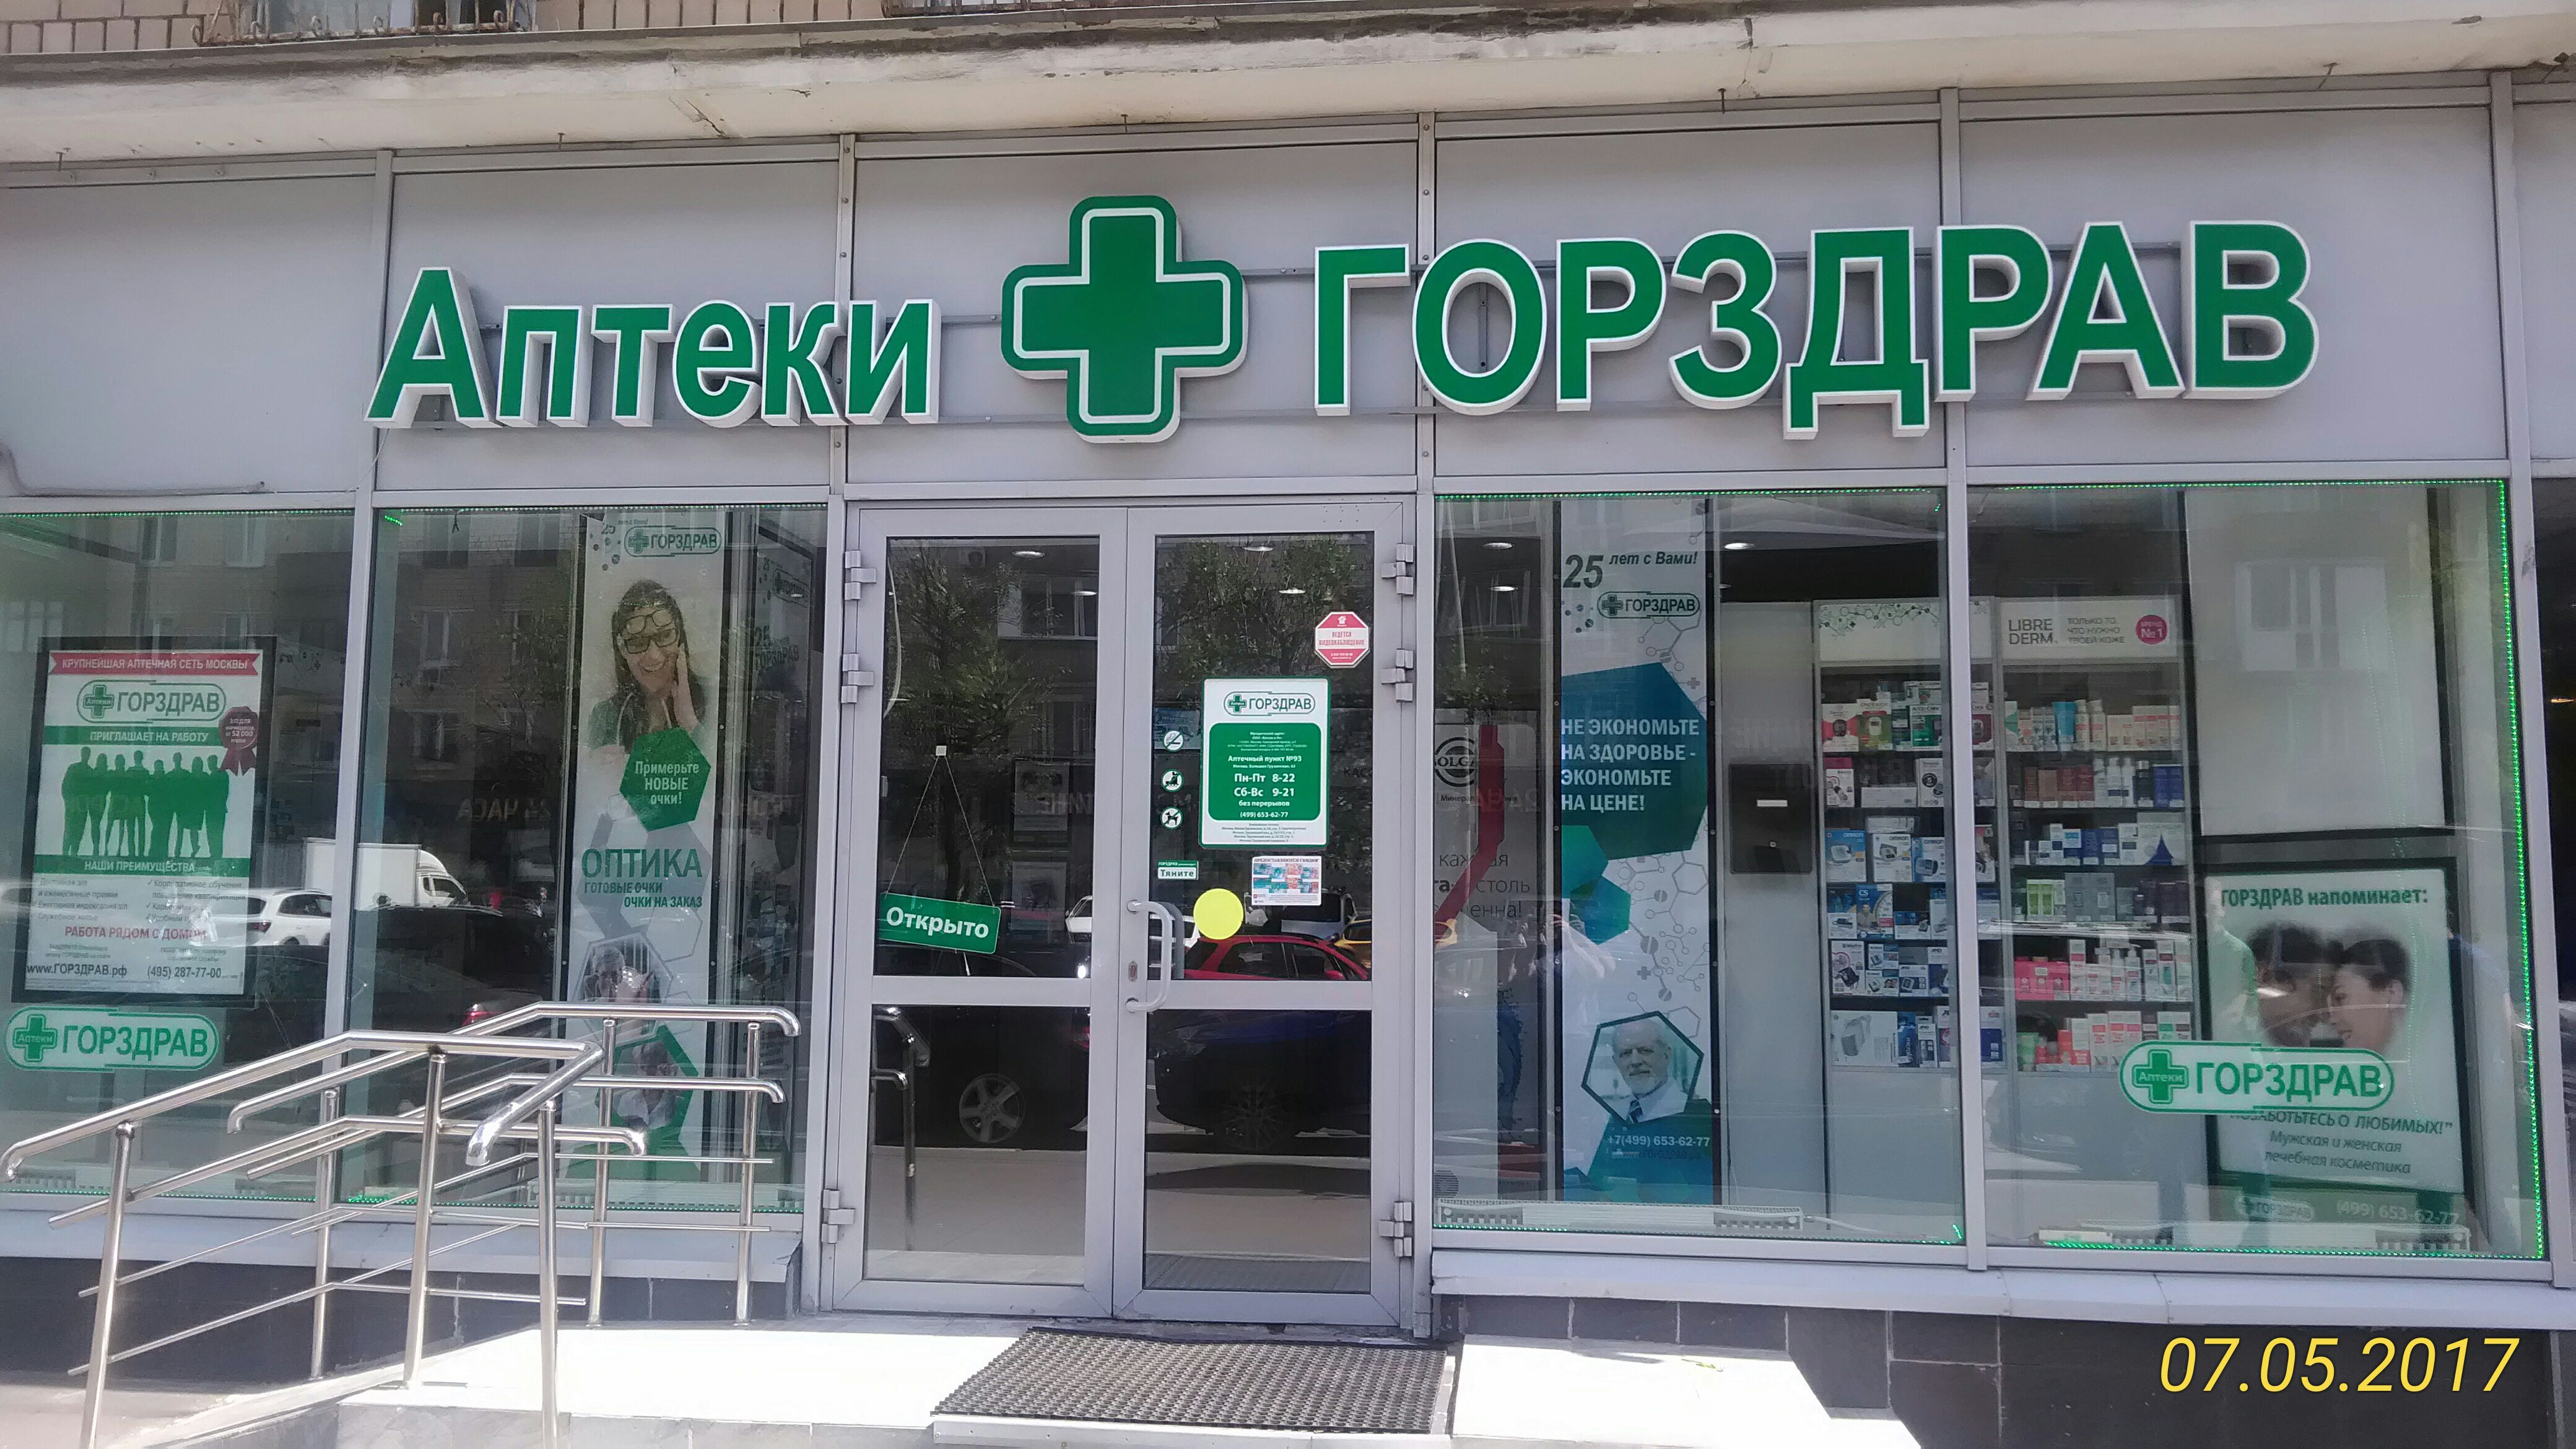 Заказ Лекарств В Аптеку Горздрав В Воронеже